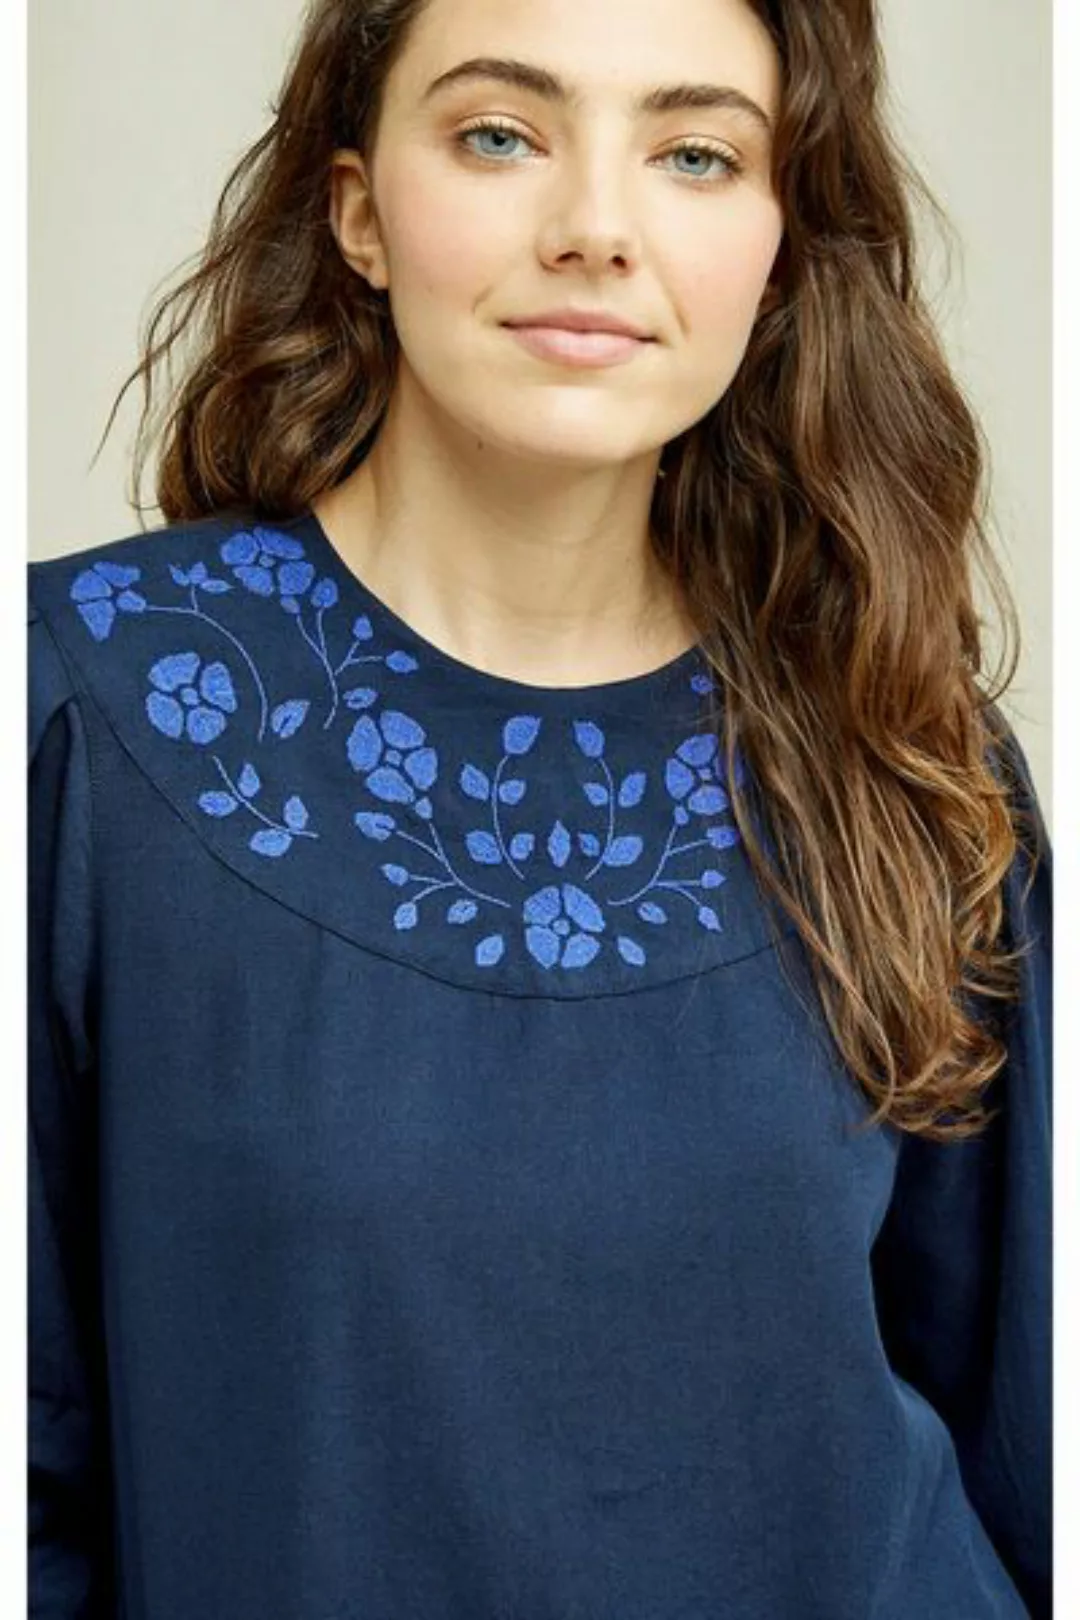 Bluse Keva Embroidered Top günstig online kaufen